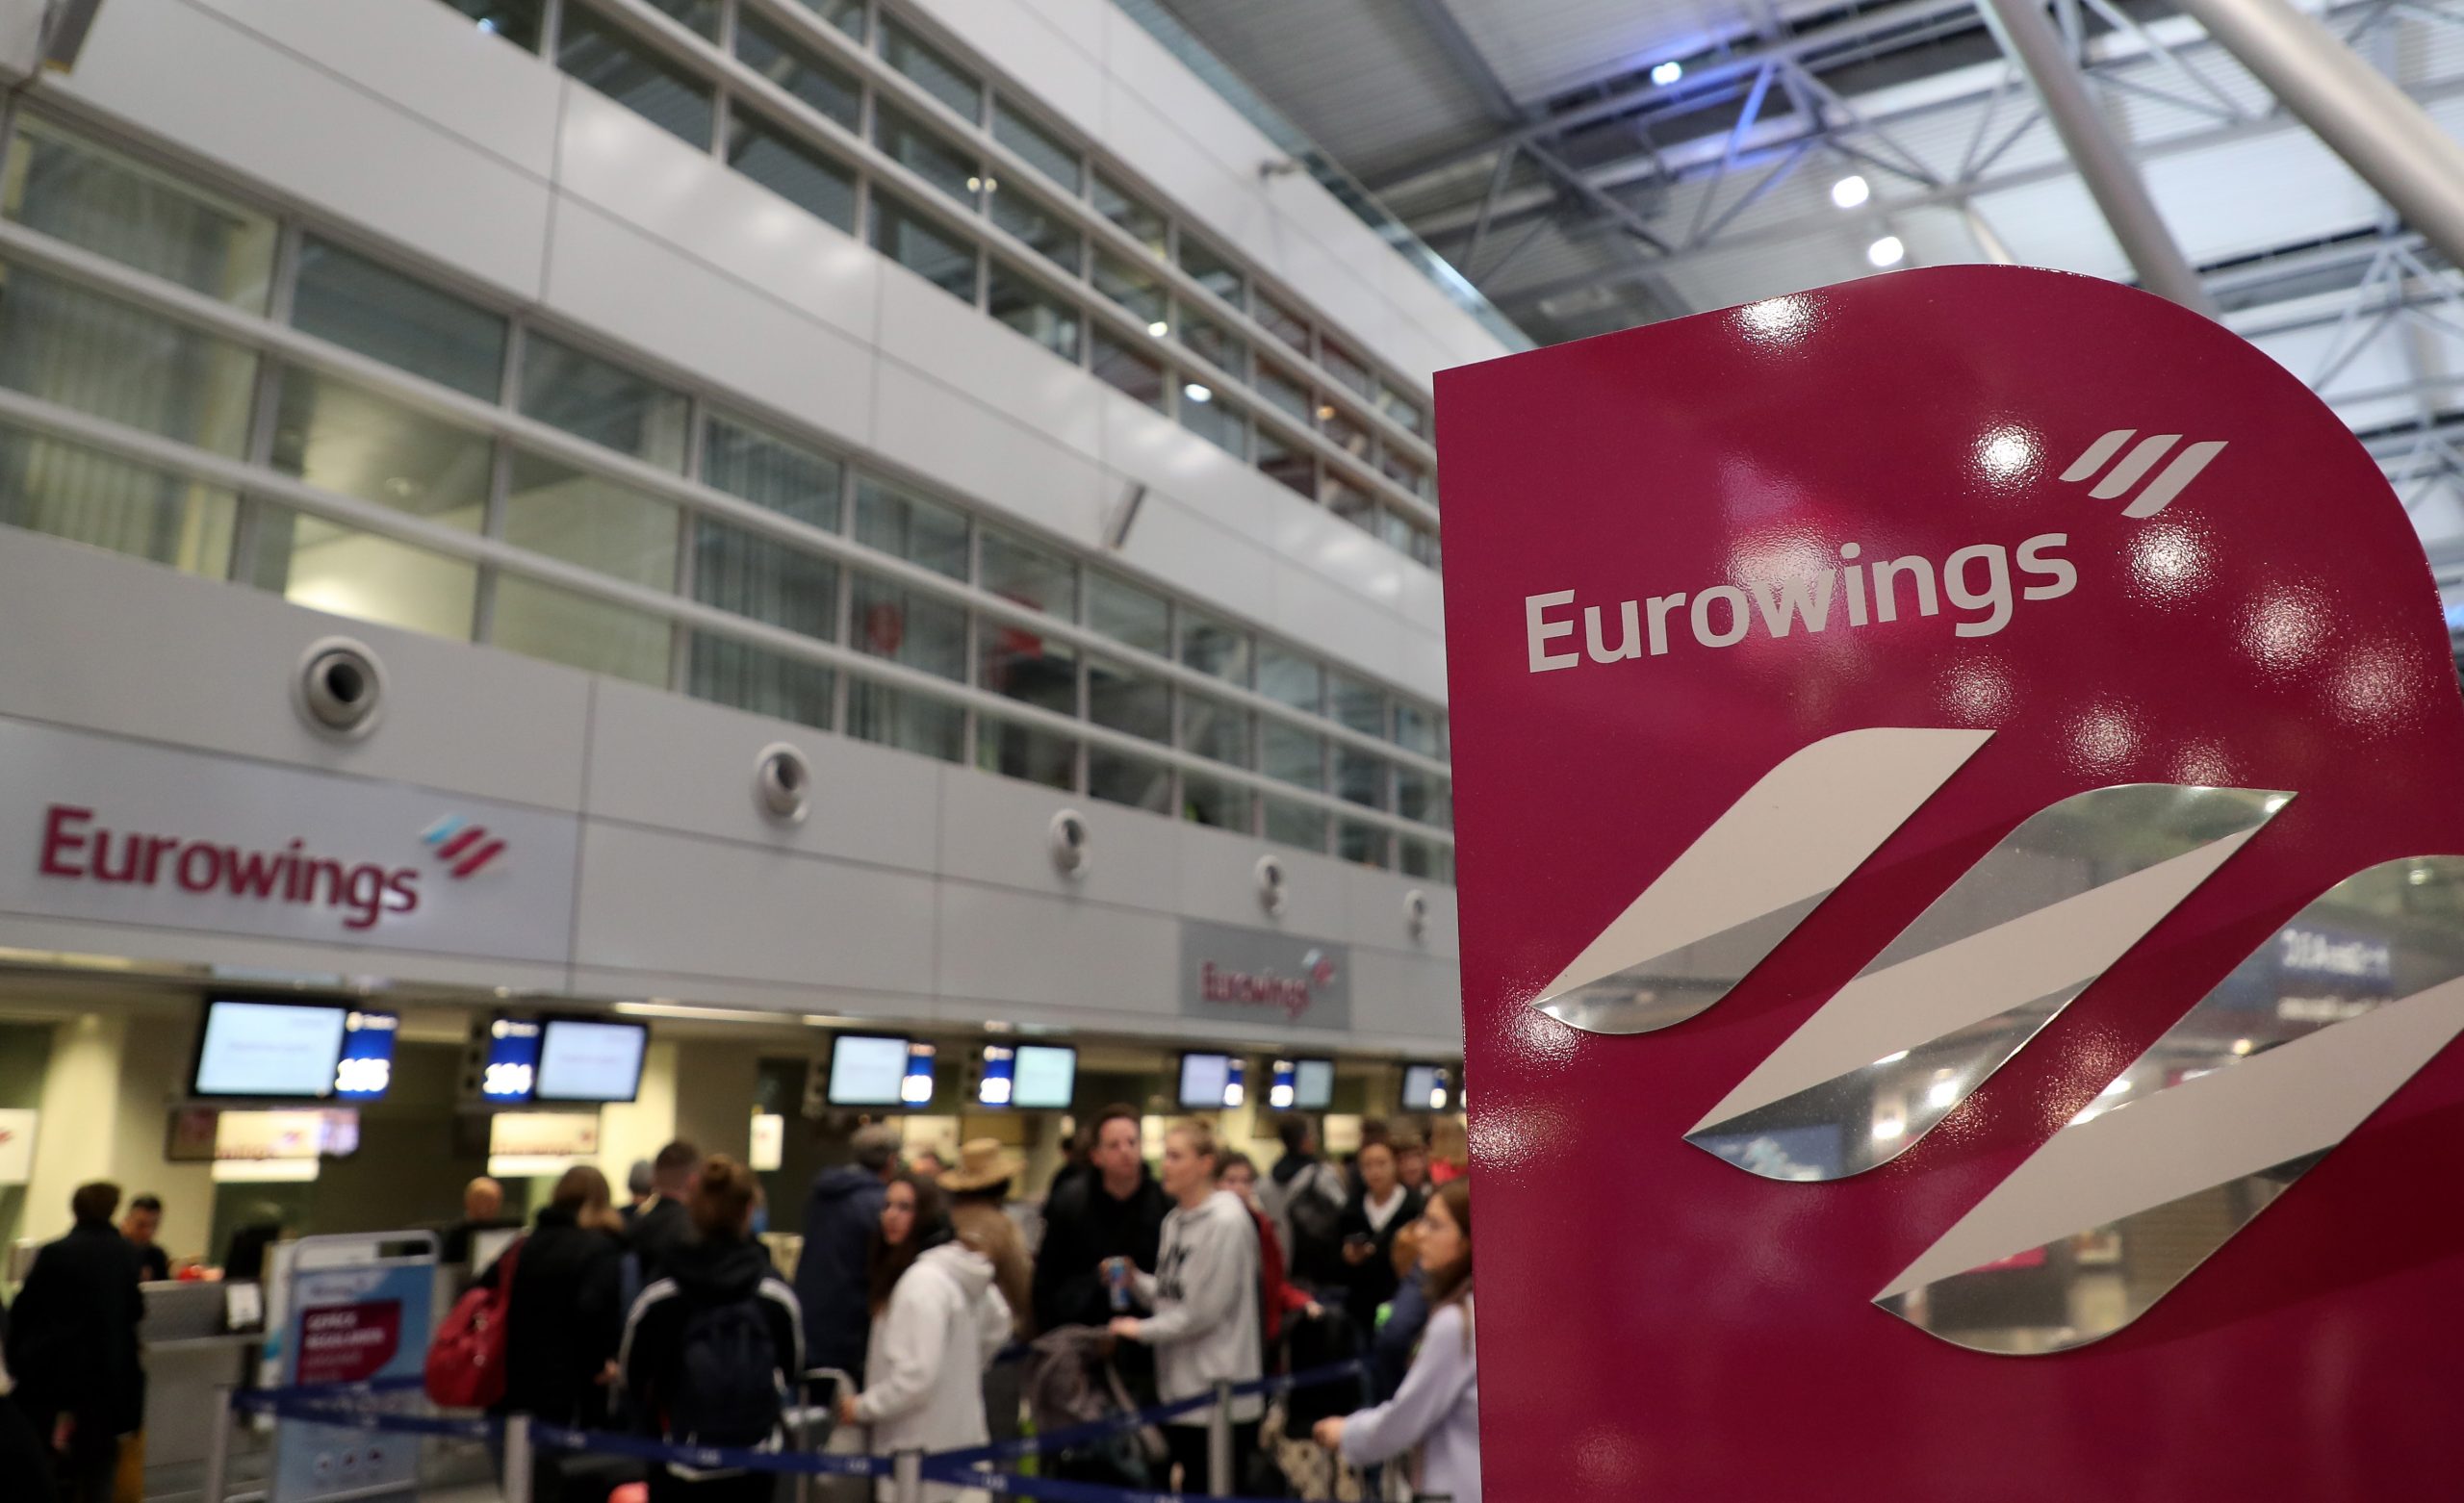 Passagiers in de rij van een check-in balie van Eurowings voor het uitbreken van de coronacrisis. Foto: EPA/Friedemann Vogel